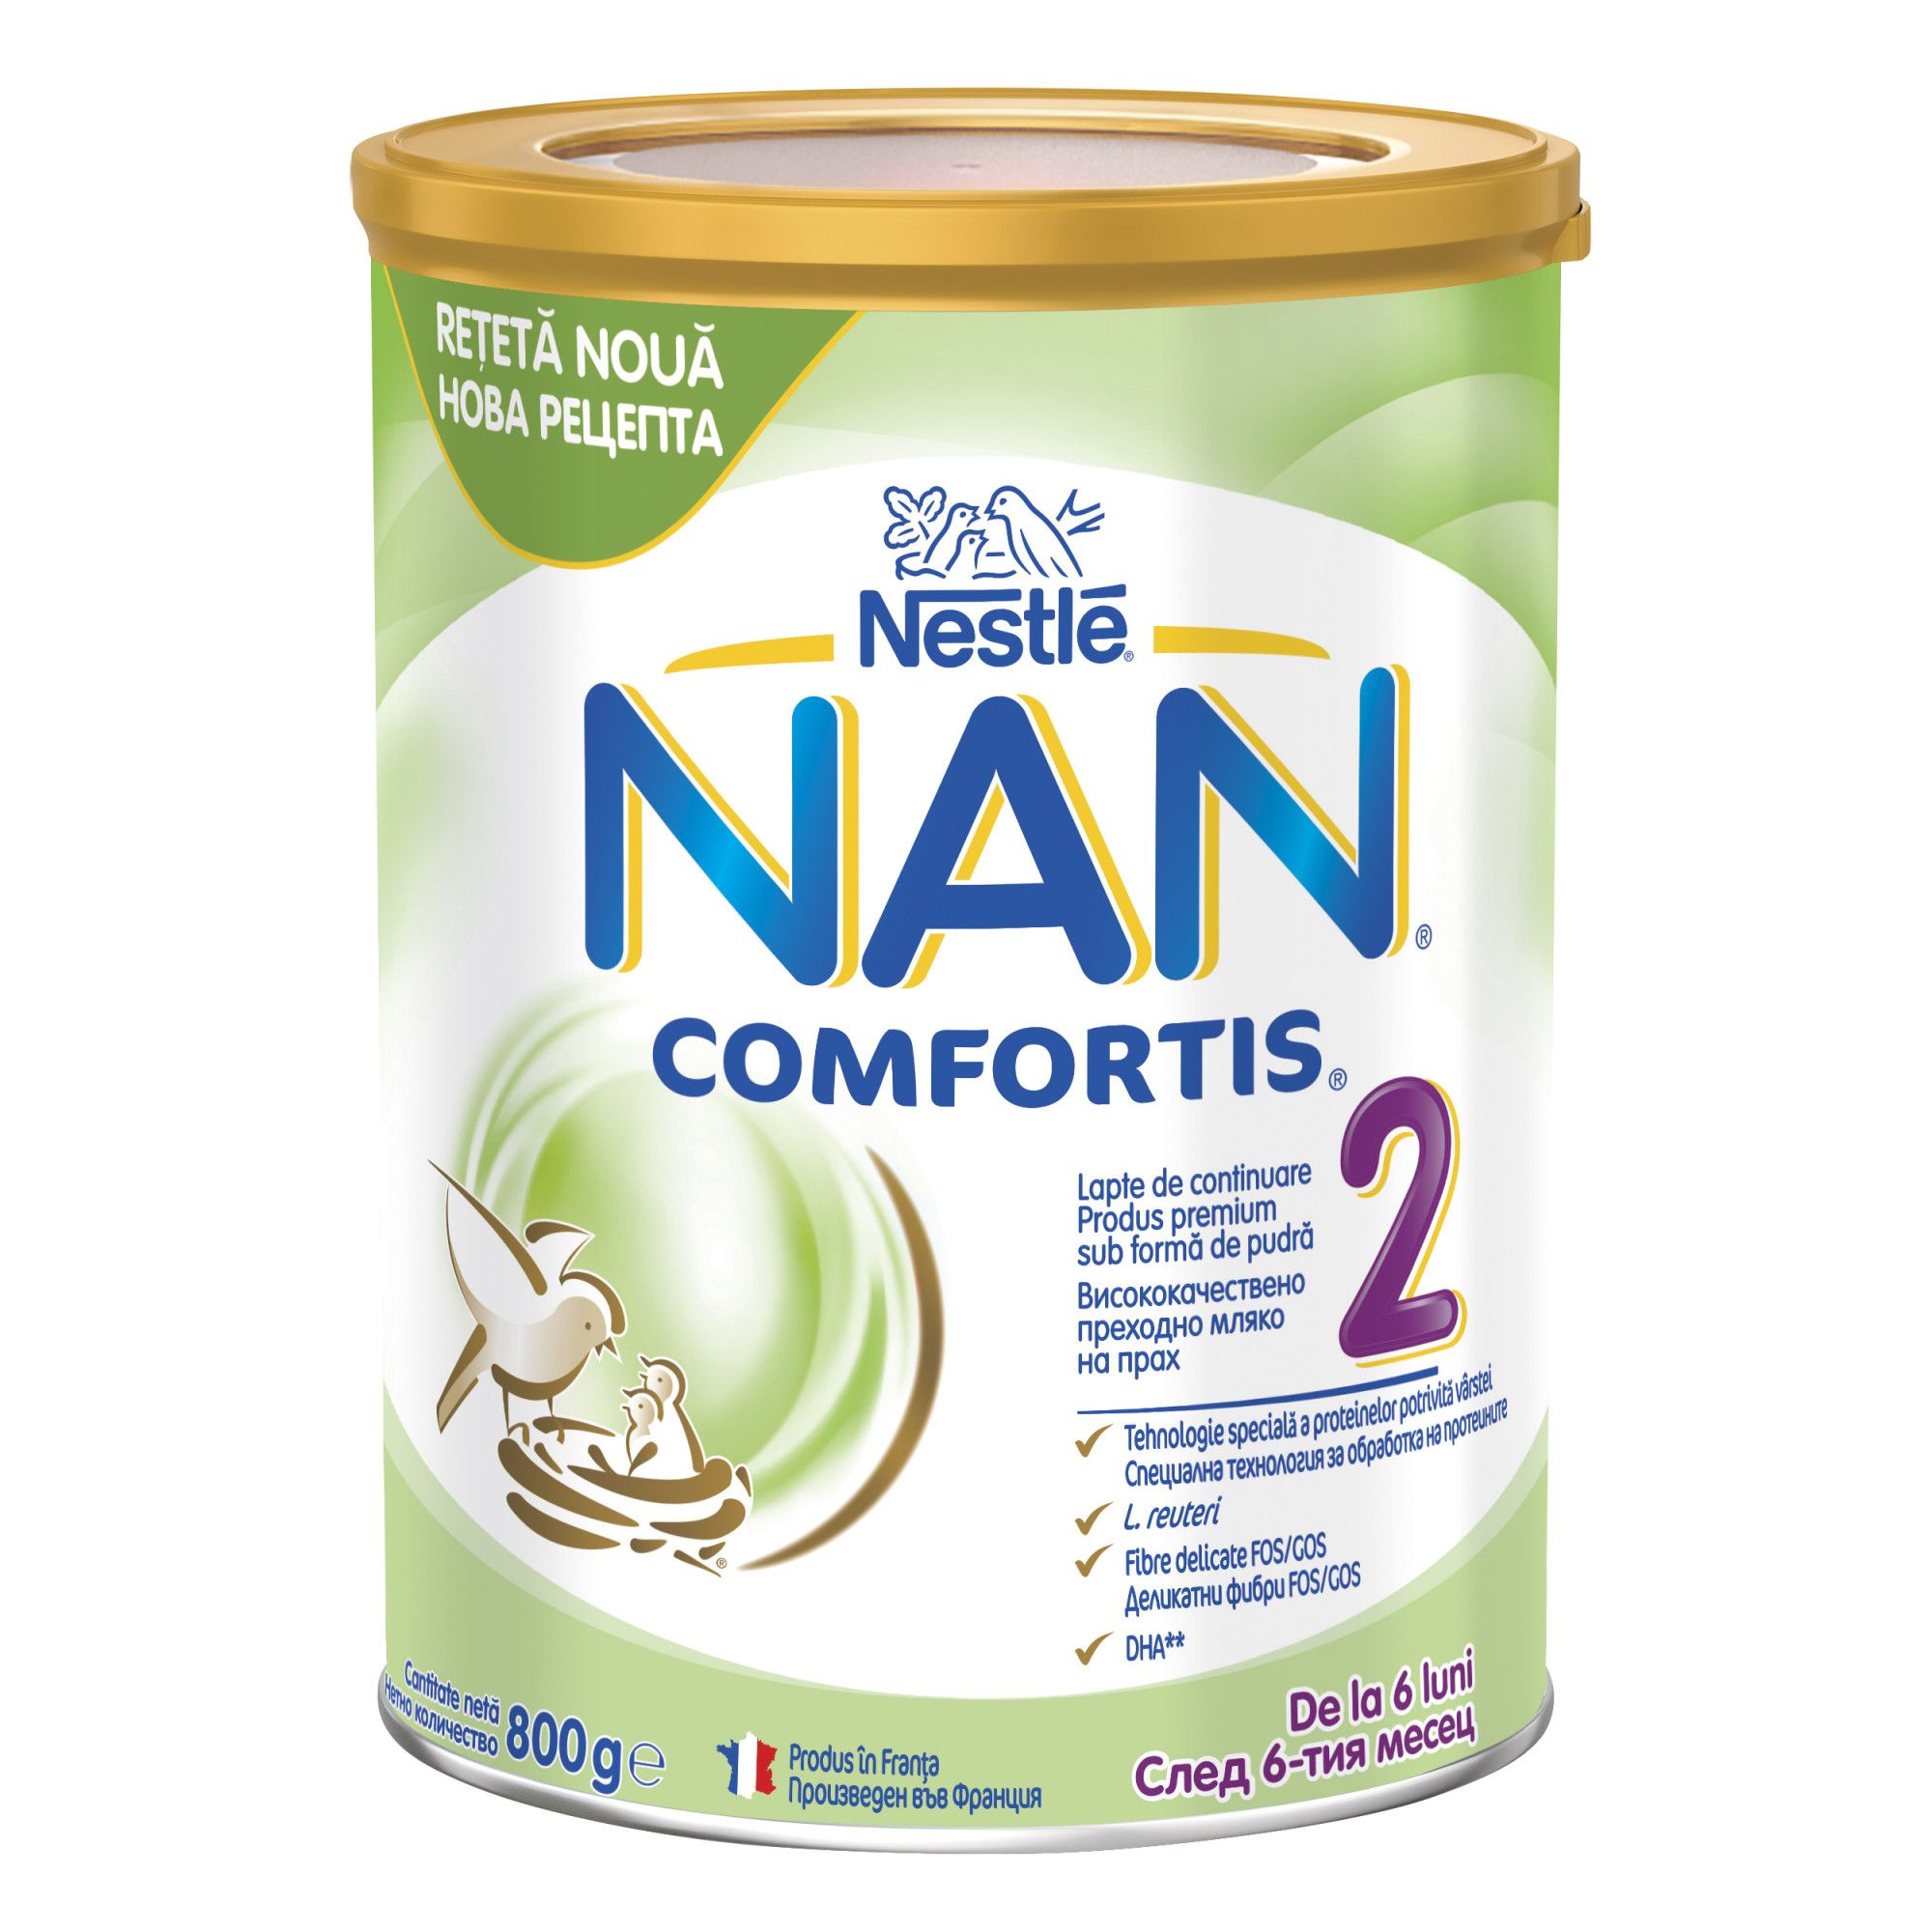 Formule speciale de lapte praf - Nestle NAN COMFORTIS 2, Lapte praf de continuare de la 6 luni, 800 grame, medik-on.ro